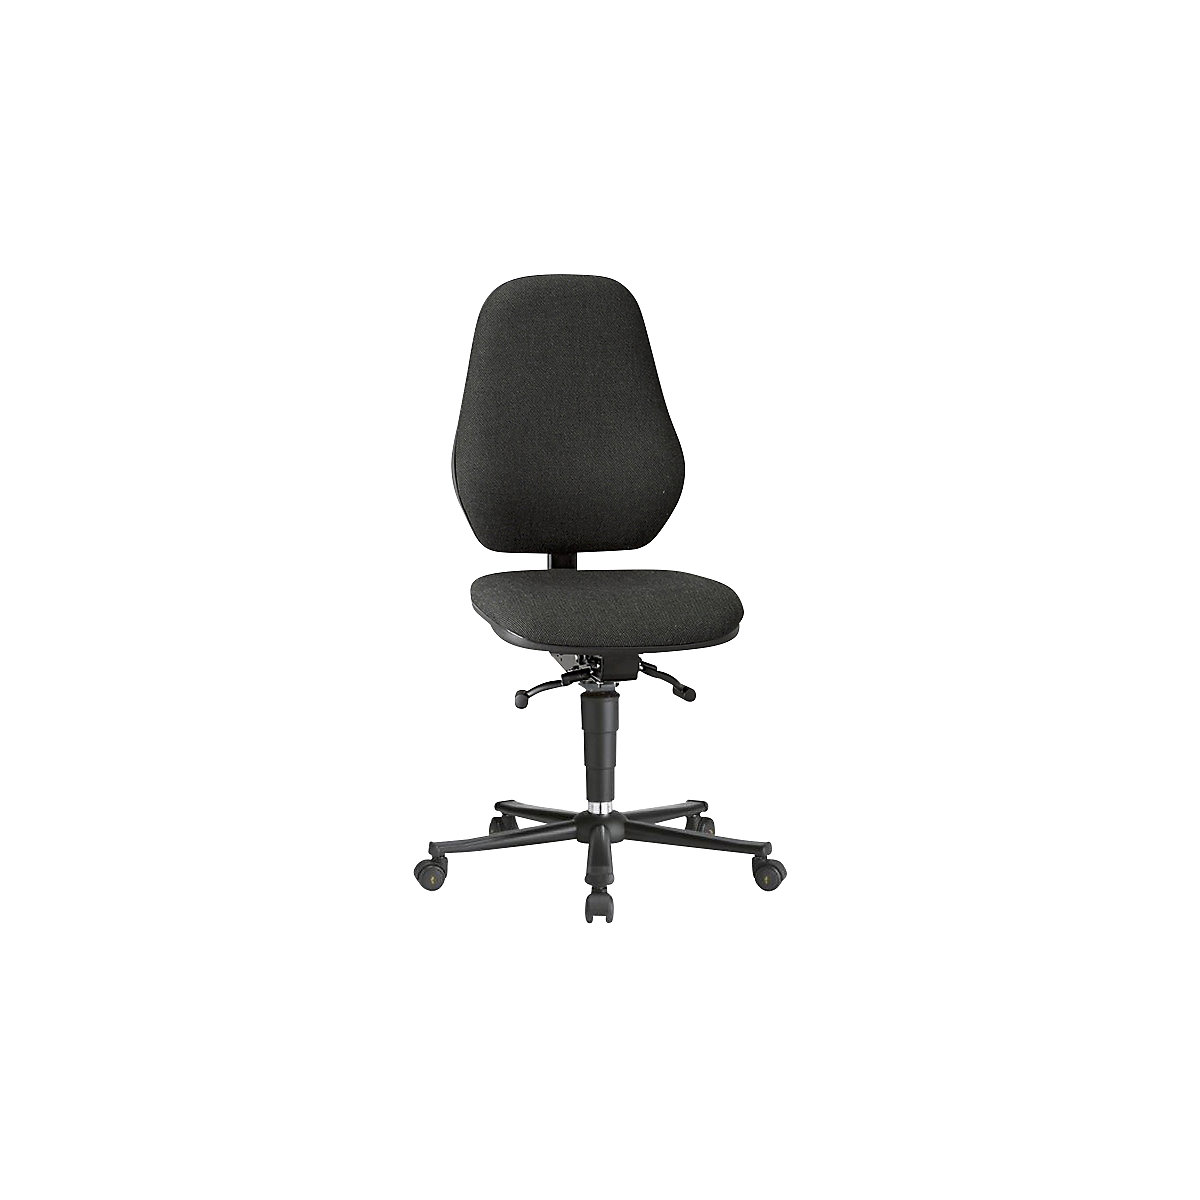 Pracovní otočná židle BASIC, ESD – bimos